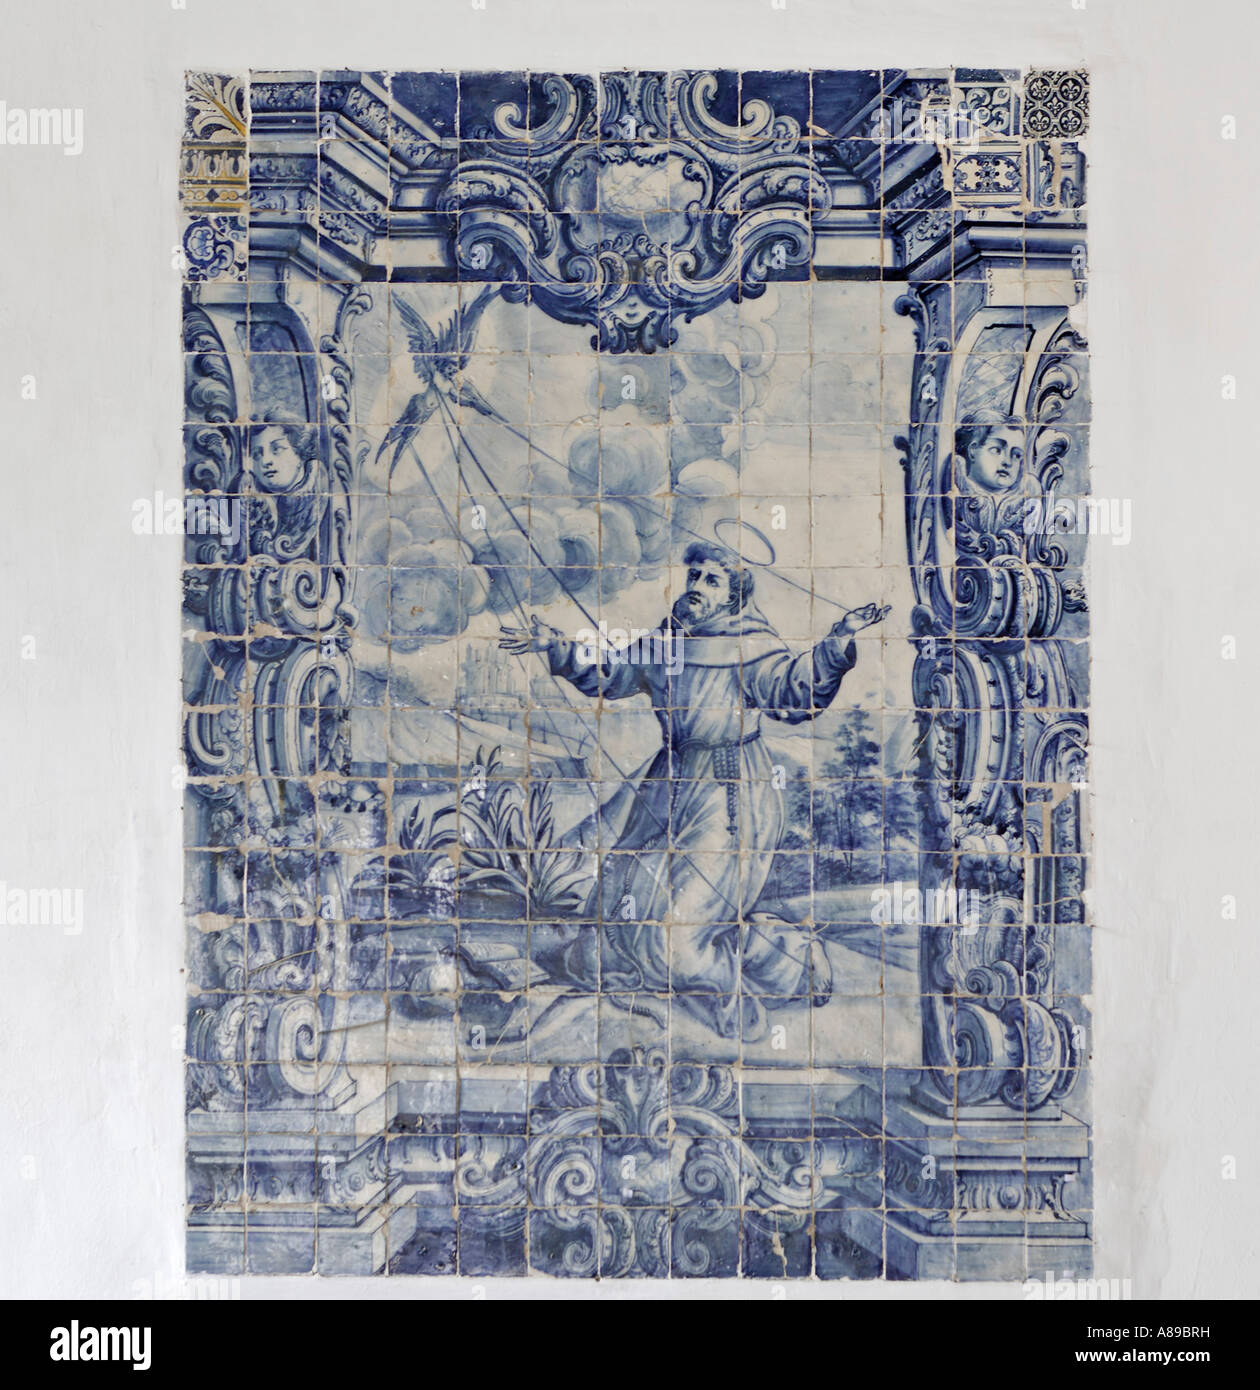 Azulejo with a religious motif in the Convento de Santa Clara, Funchal, Madeira, Portugal Stock Photo